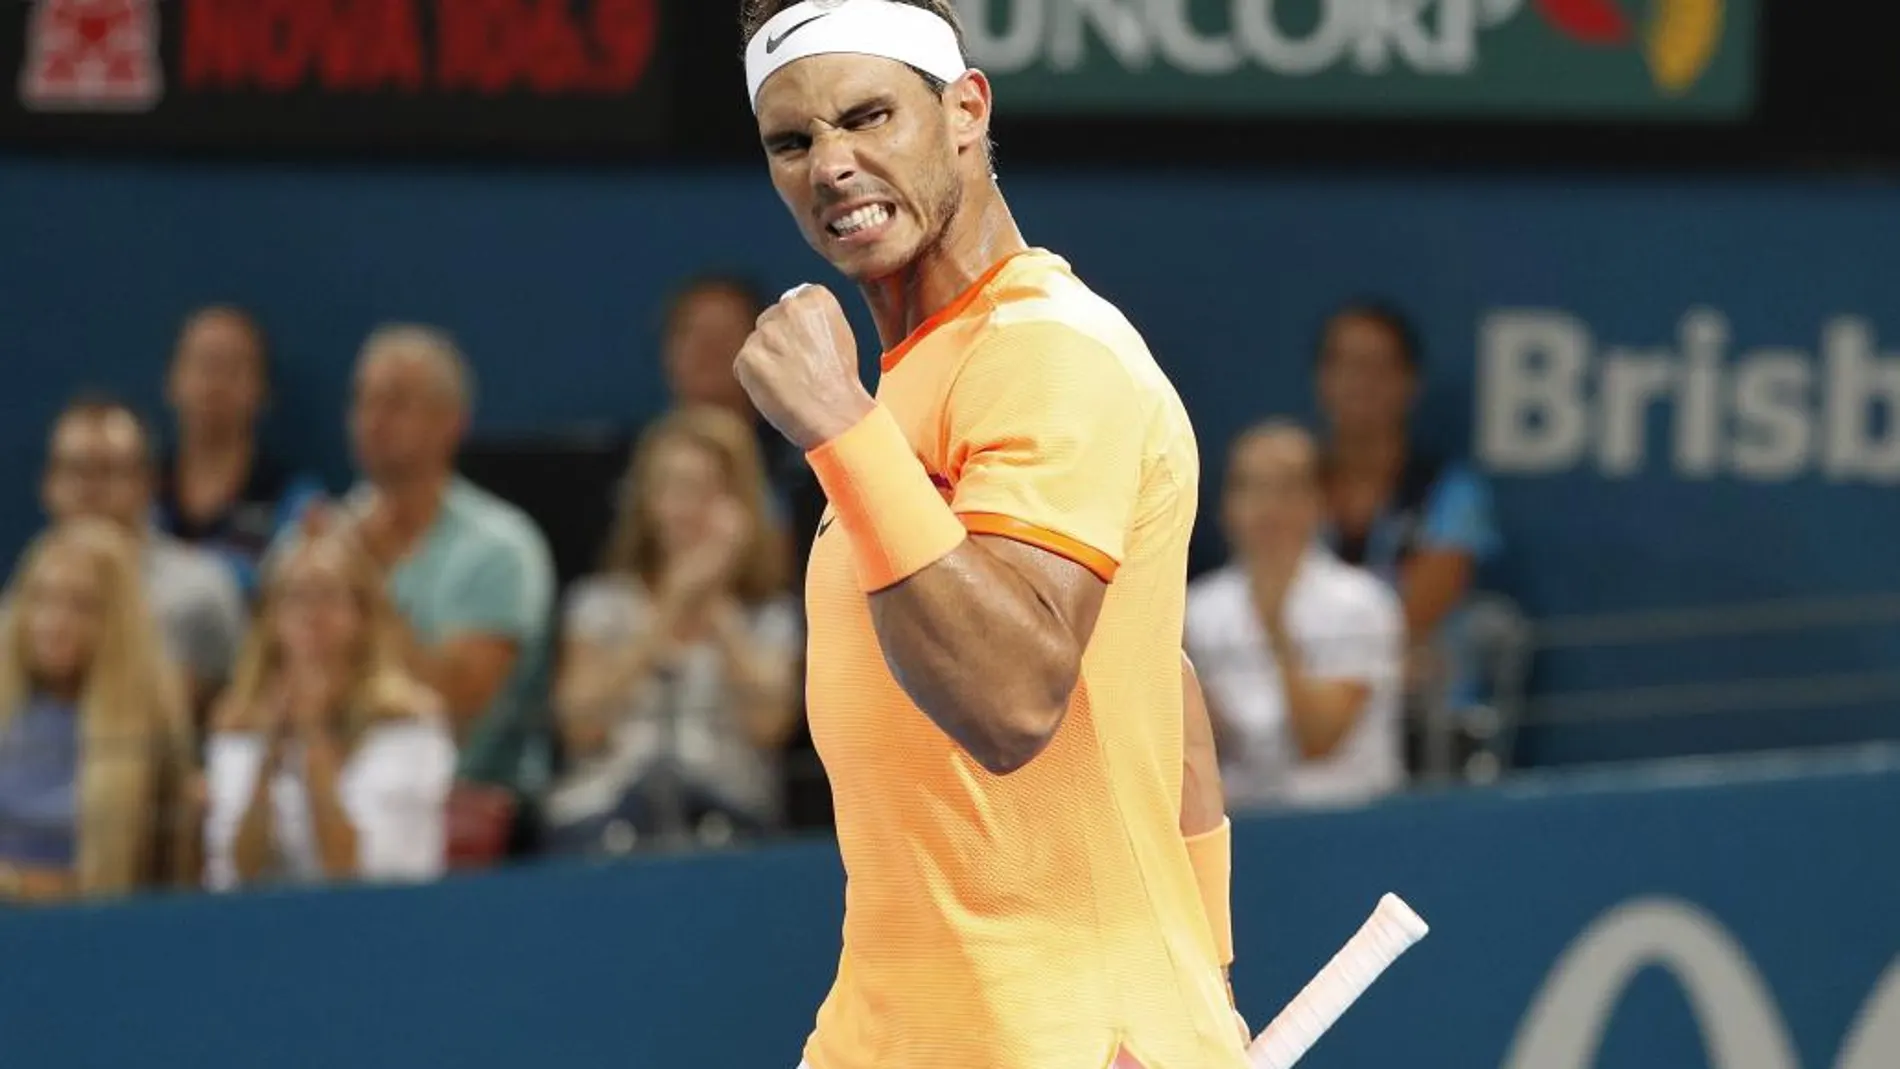 El tenista español Rafael Nadal celebra su victoria ante el ucraniano Alexandr Dolgopolov tras el partido de primera ronda del torneo de Brisbane que ambos disputaron en Brisbane